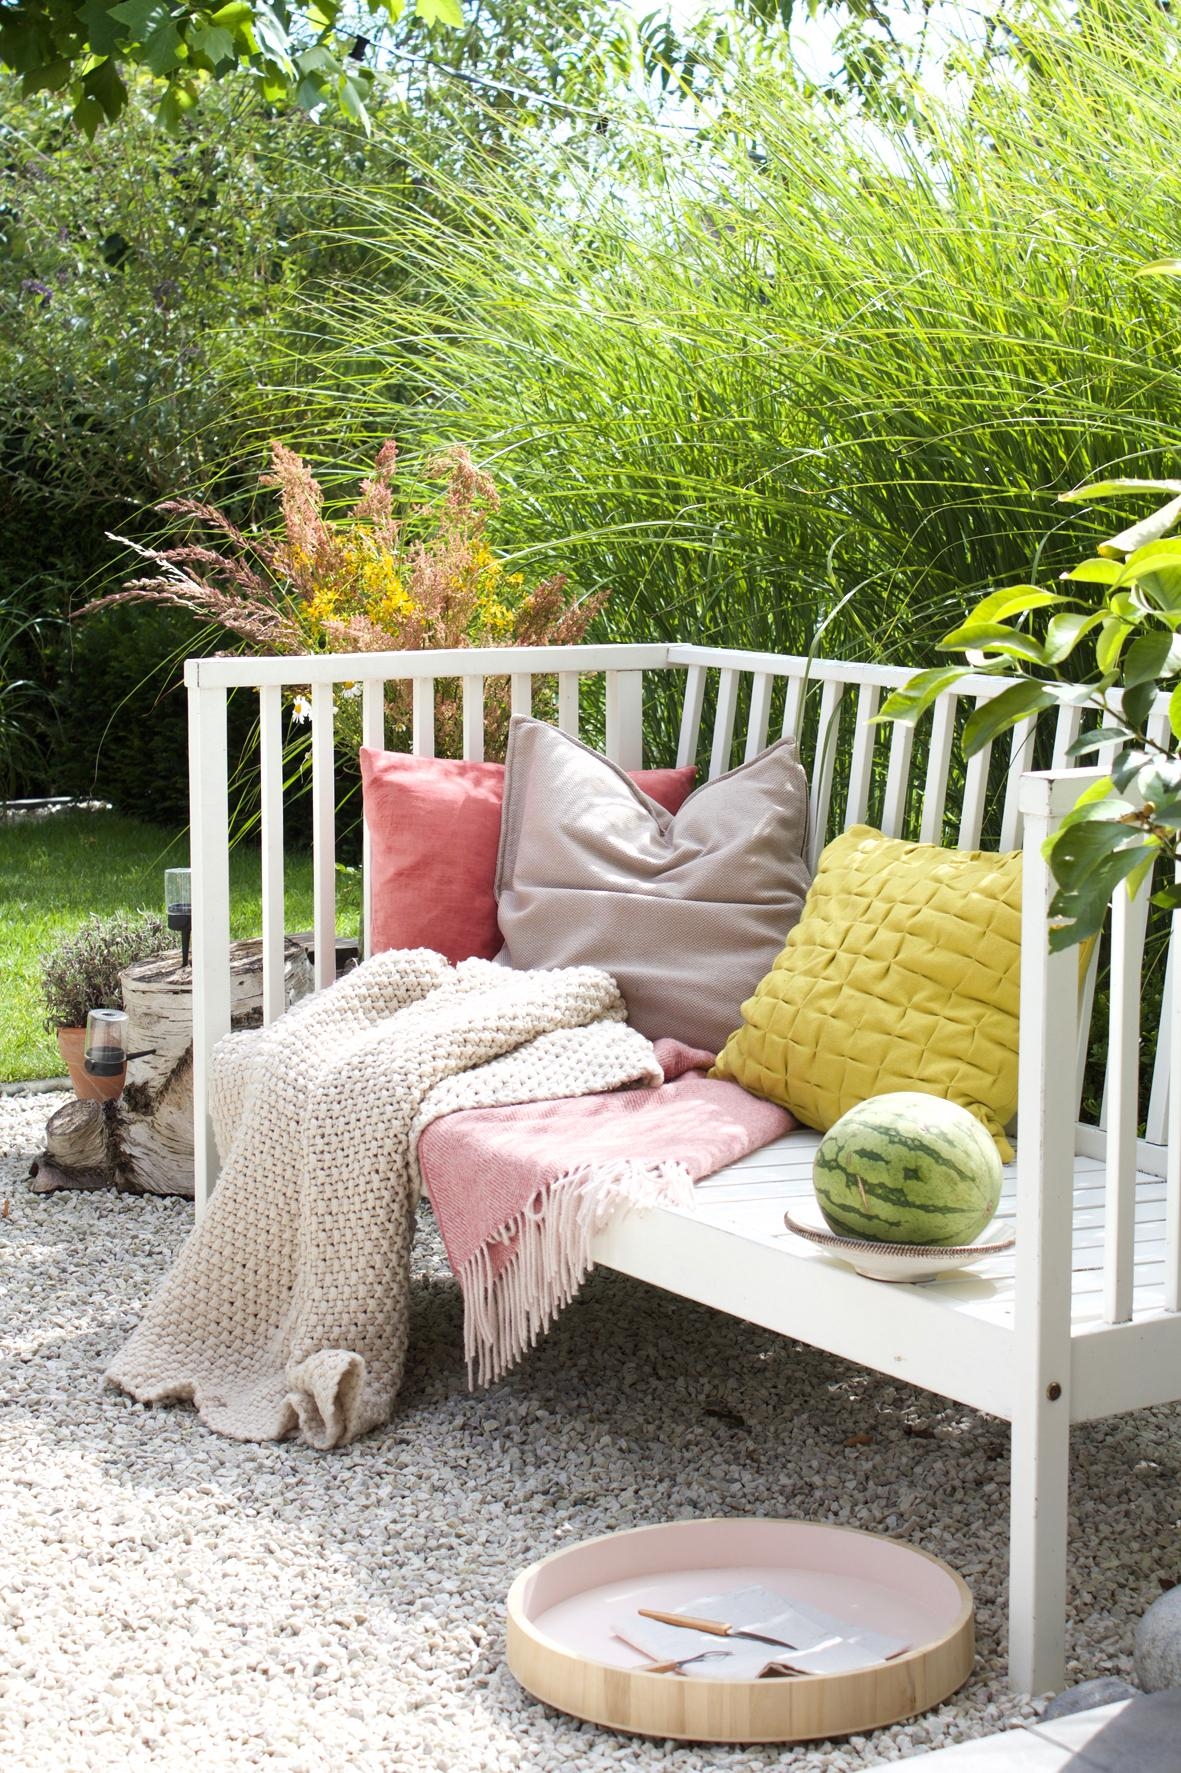 #Sommer #Terrasse mit #Kuscheldecke und frischer #Melone #chillen am #Nachmittag #balkondeko #sommerdeko #garten